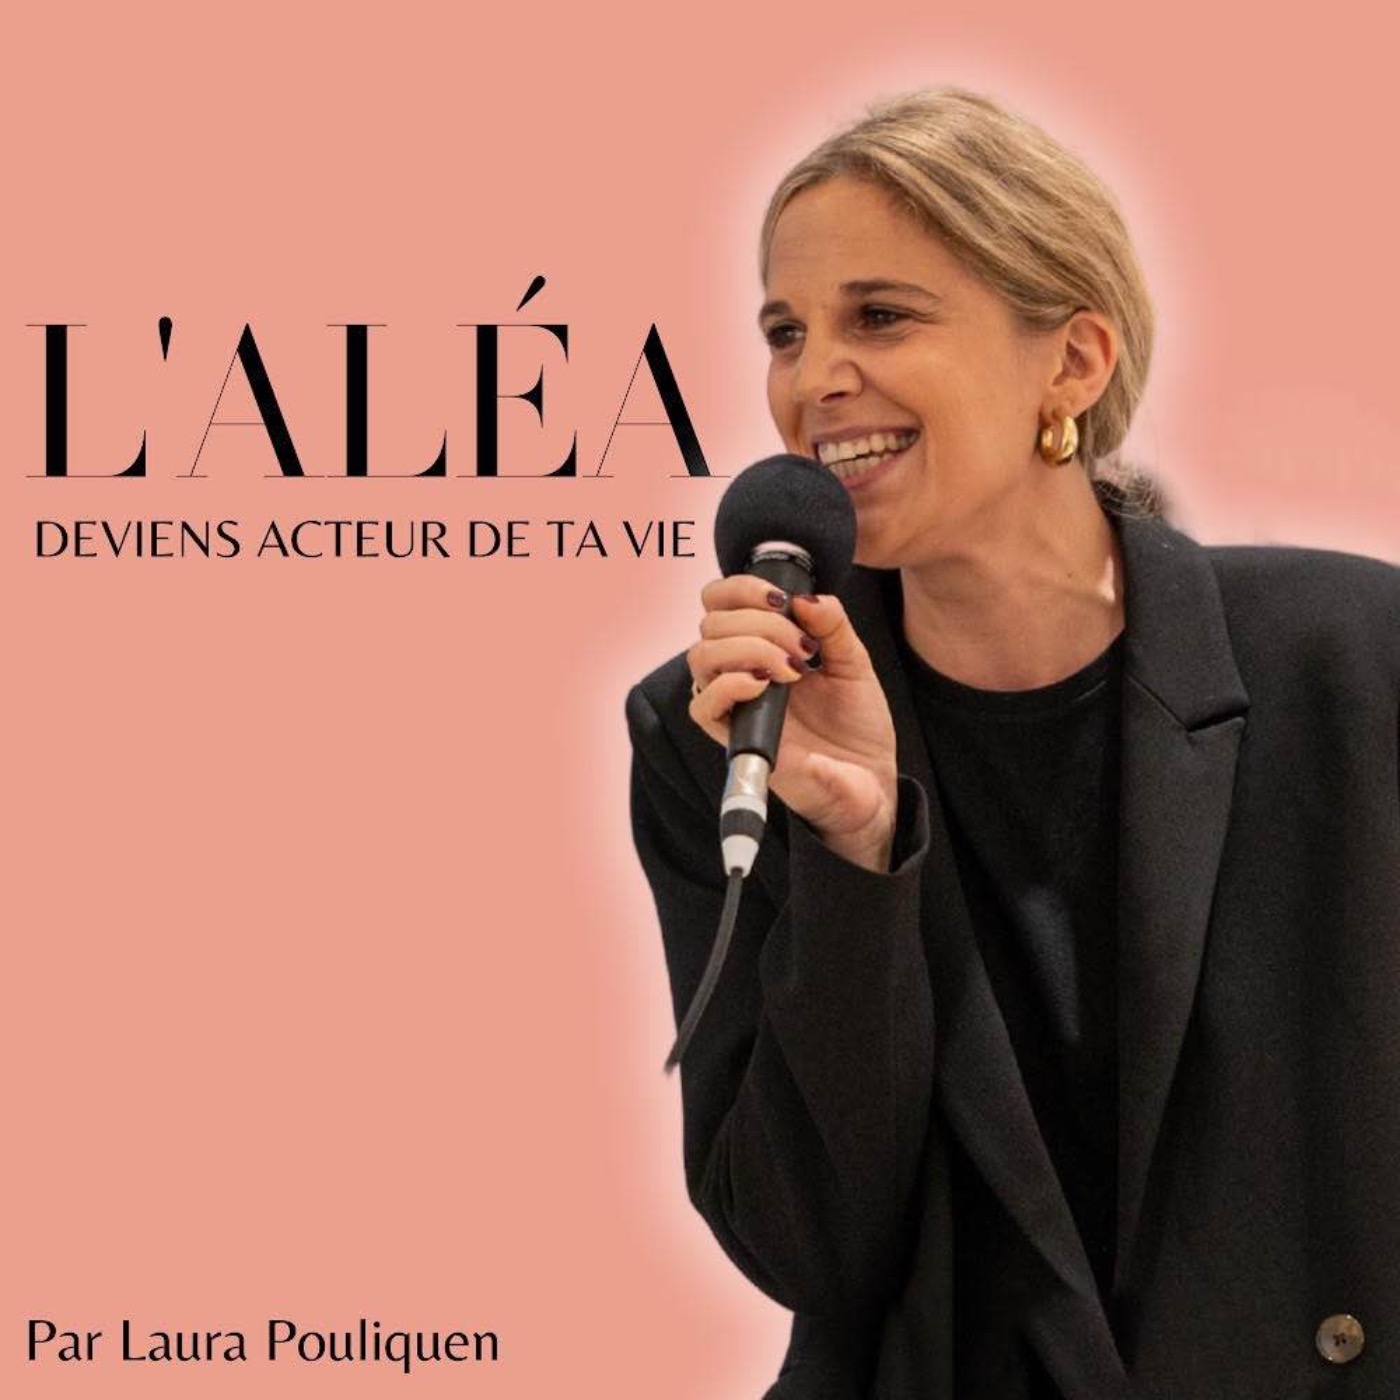 L'aléa, le podcast pour réaliser ses rêves malgré les aléas:Laura Pouliquen